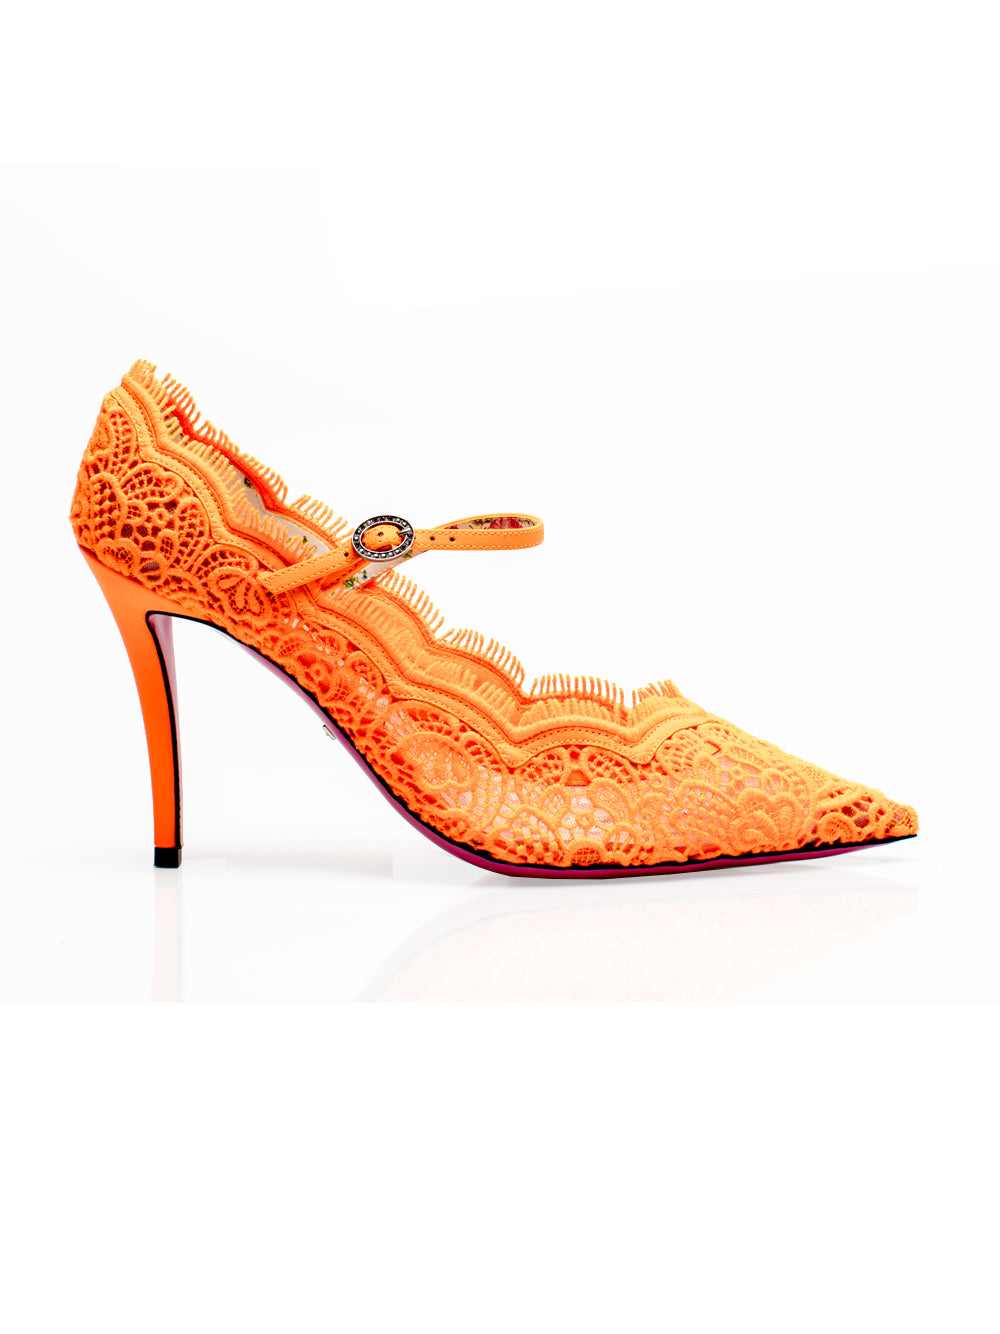 neon orange high heels